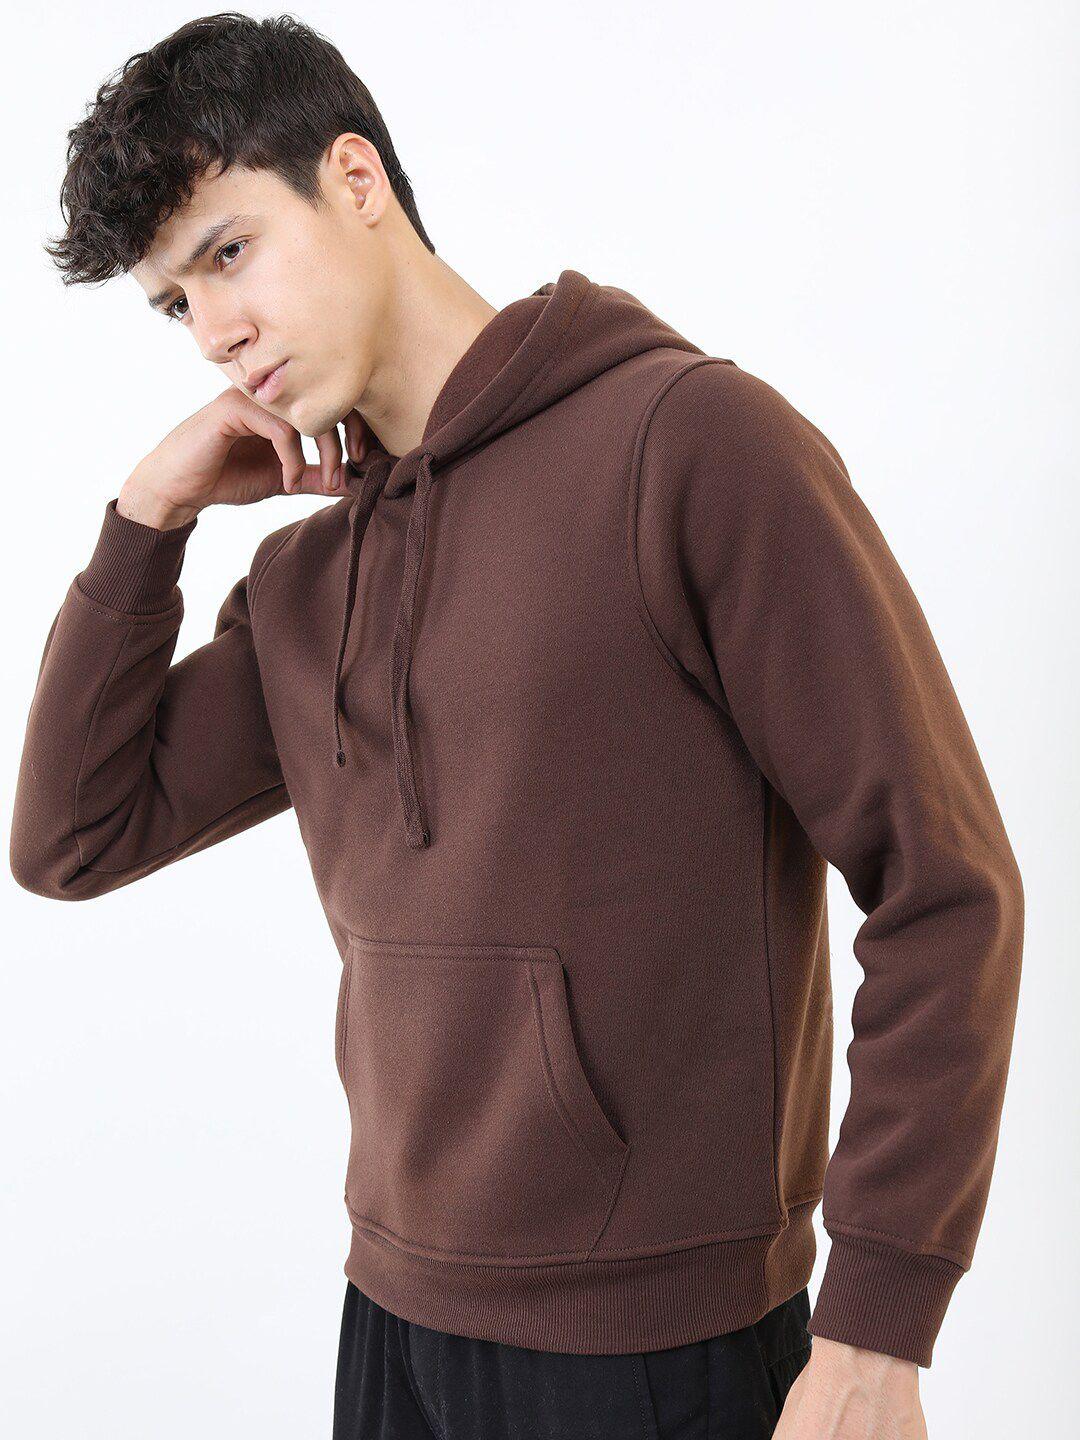 ketch-men-brown-hooded-sweatshirt